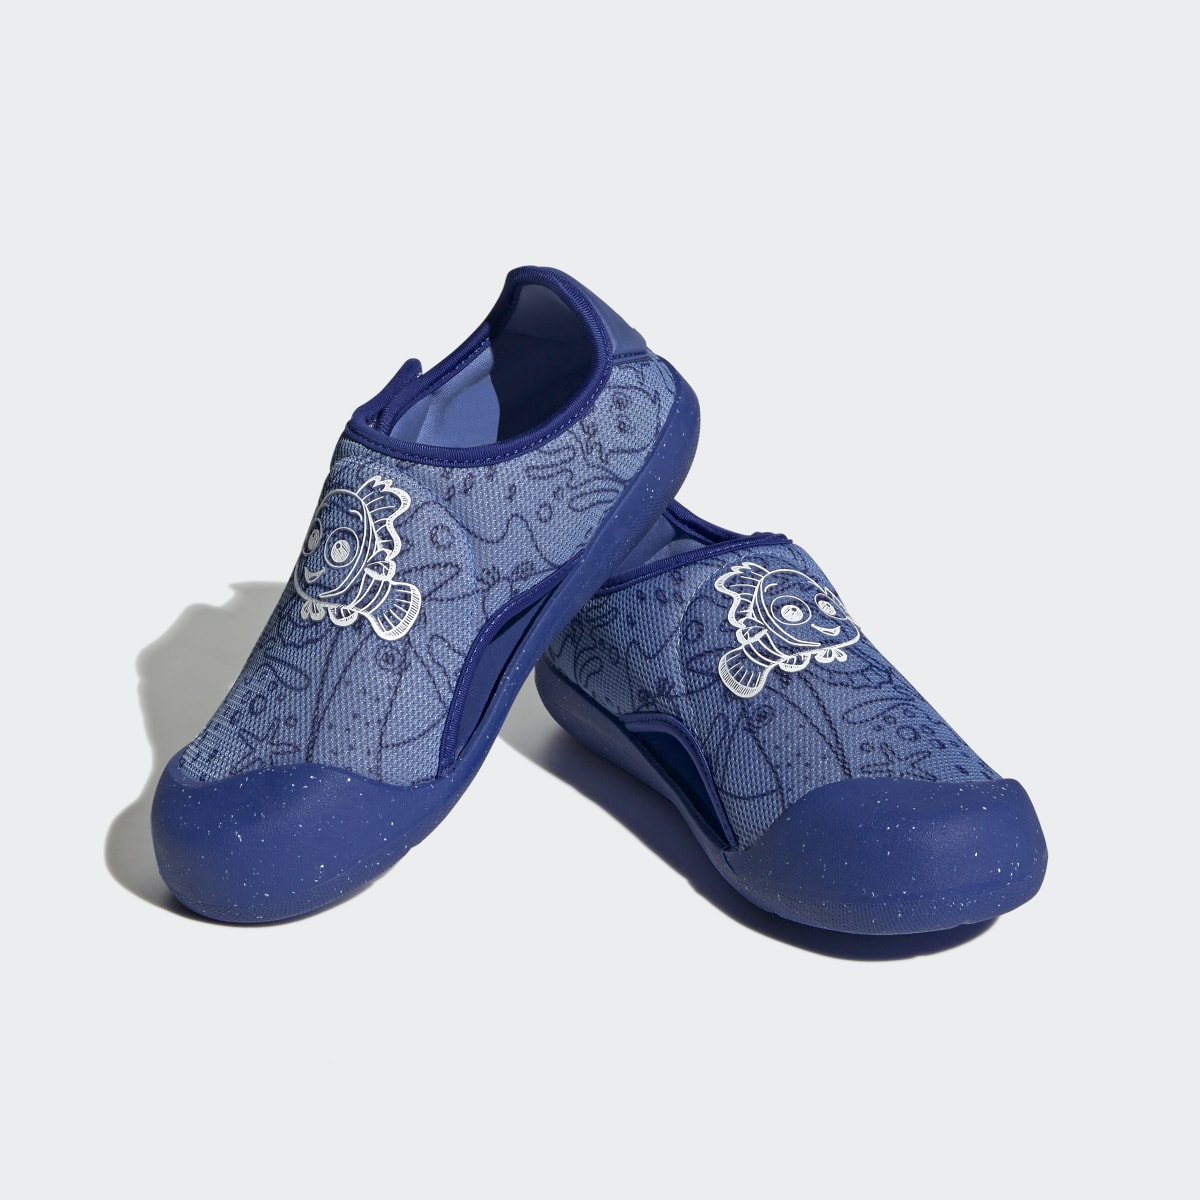 Adidas x Disney AltaVenture 2.0 Finding Nemo Swim Sandals. 5